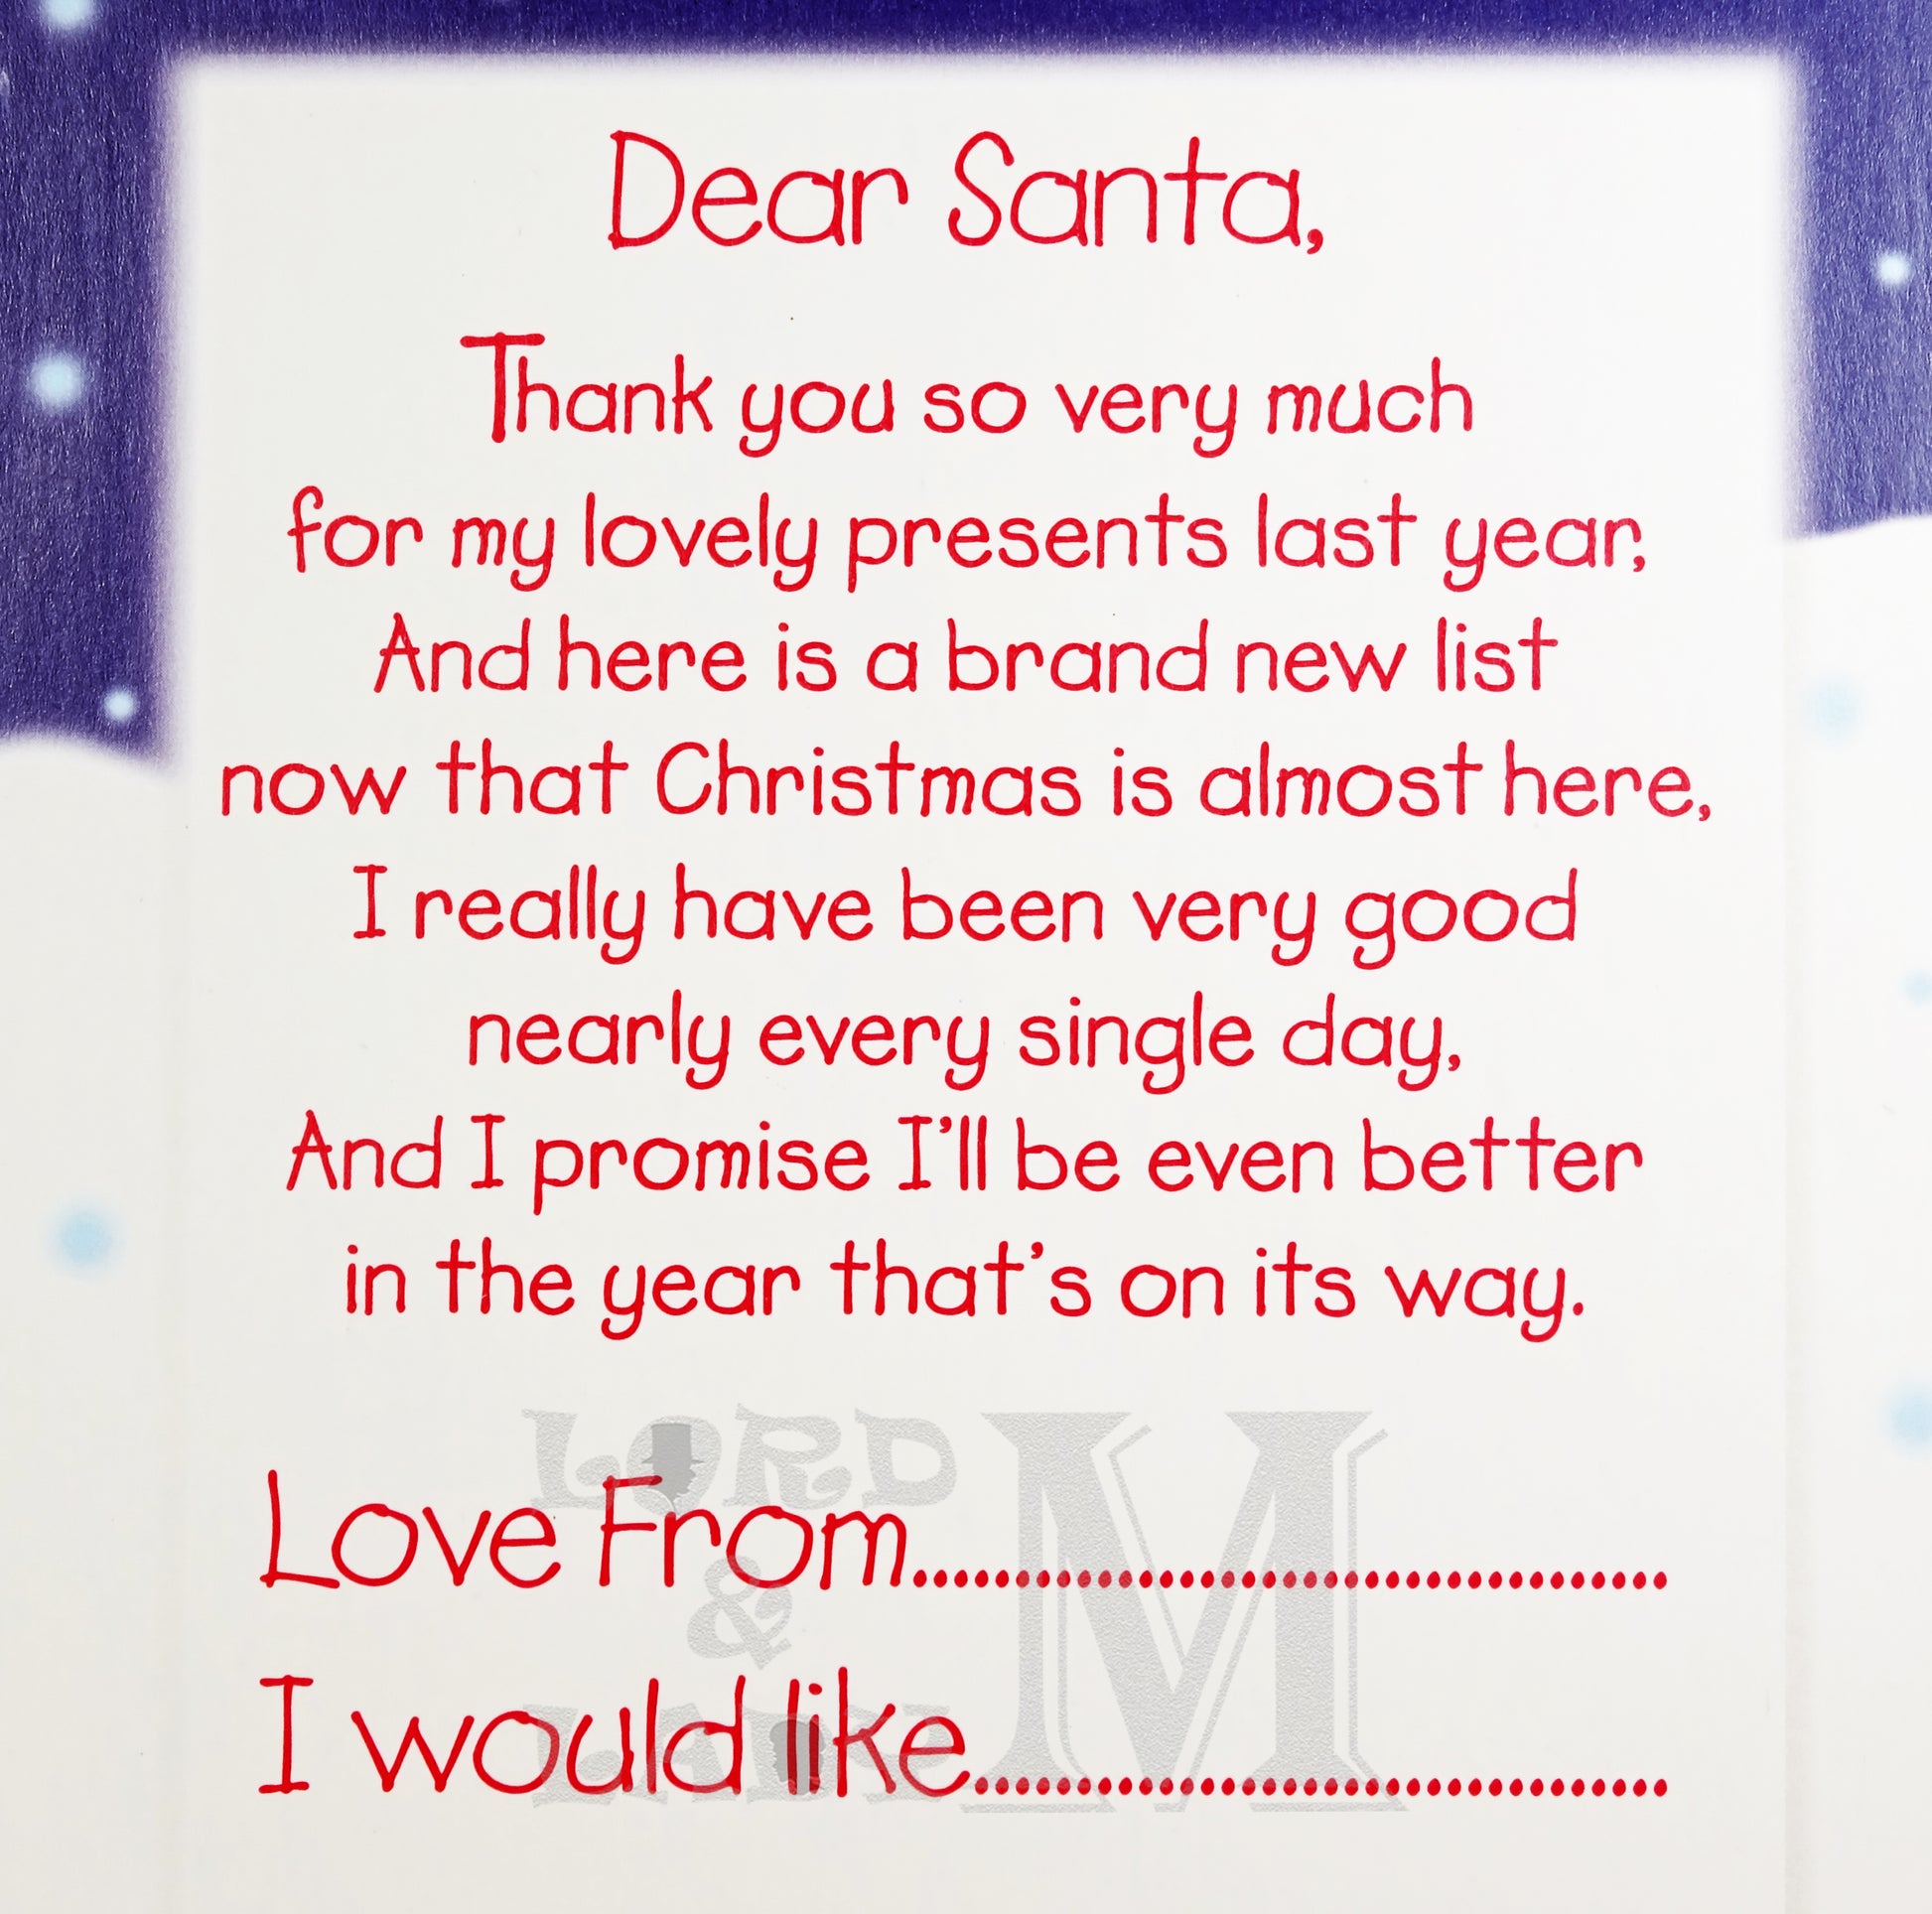 19cm - A Letter To Santa - Santa Sleigh - BGC